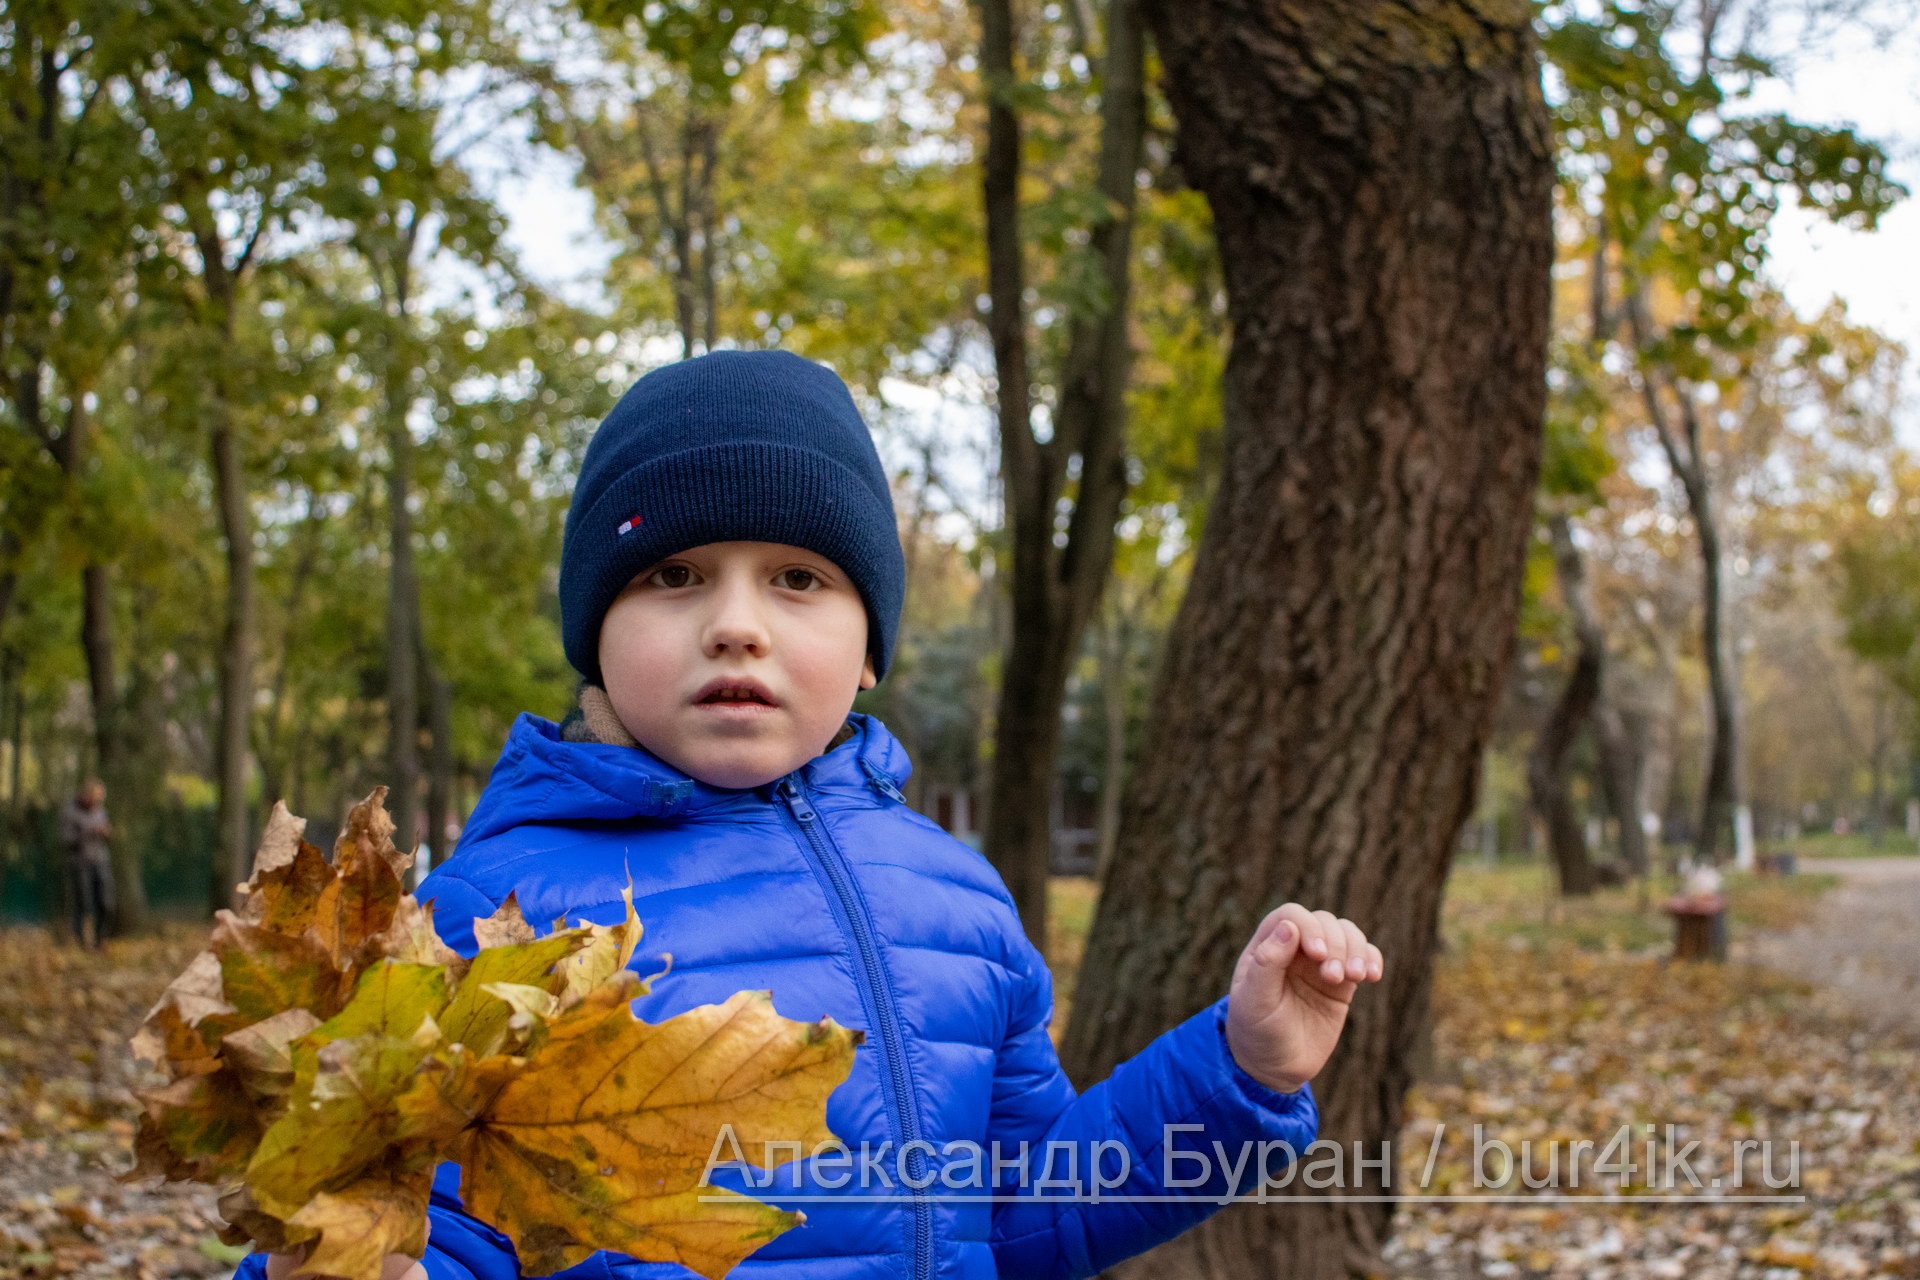 Мальчик в синей куртке с желтыми листьями в руках